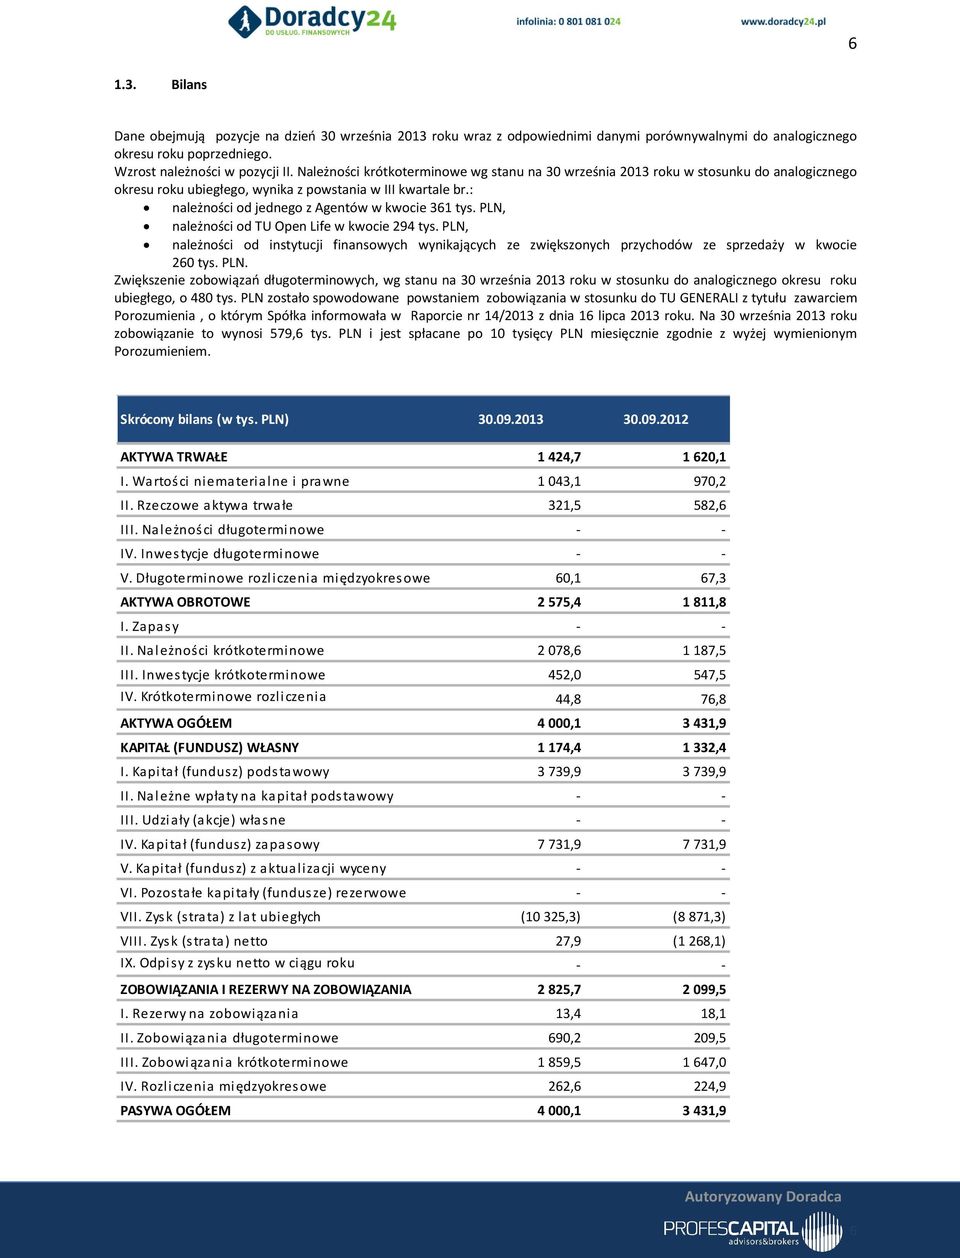 PLN, należności od TU Open Life w kwocie 294 tys. PLN, należności od instytucji finansowych wynikających ze zwiększonych przychodów ze sprzedaży w kwocie 260 tys. PLN. Zwiększenie zobowiązań długoterminowych, wg stanu na 30 września 2013 roku w stosunku do analogicznego okresu roku ubiegłego, o 480 tys.